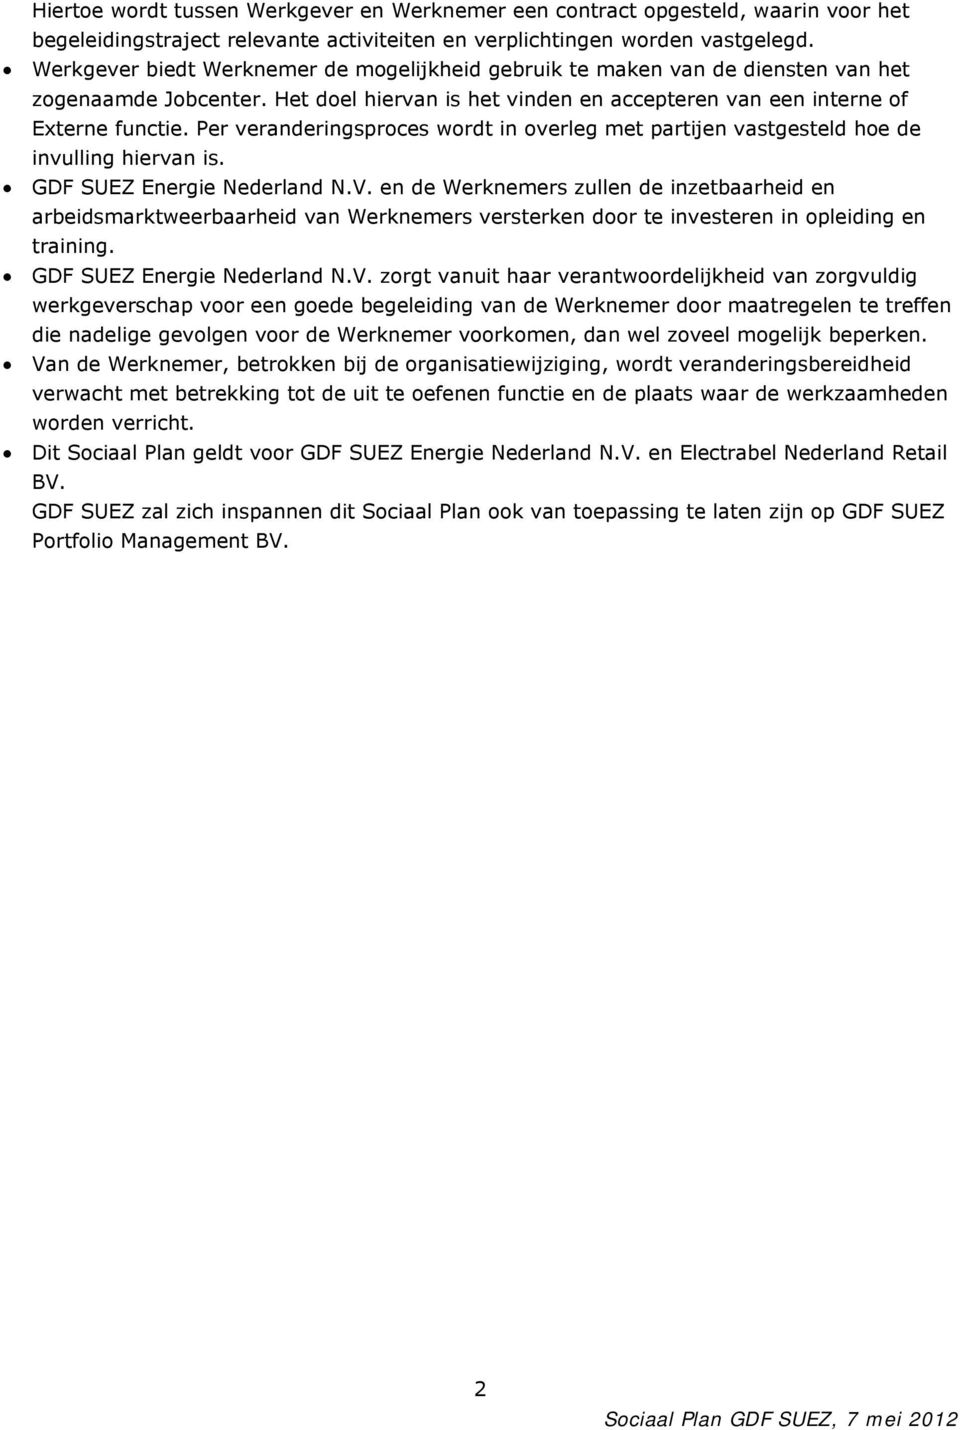 Per veranderingsproces wordt in overleg met partijen vastgesteld hoe de invulling hiervan is. GDF SUEZ Energie Nederland N.V.